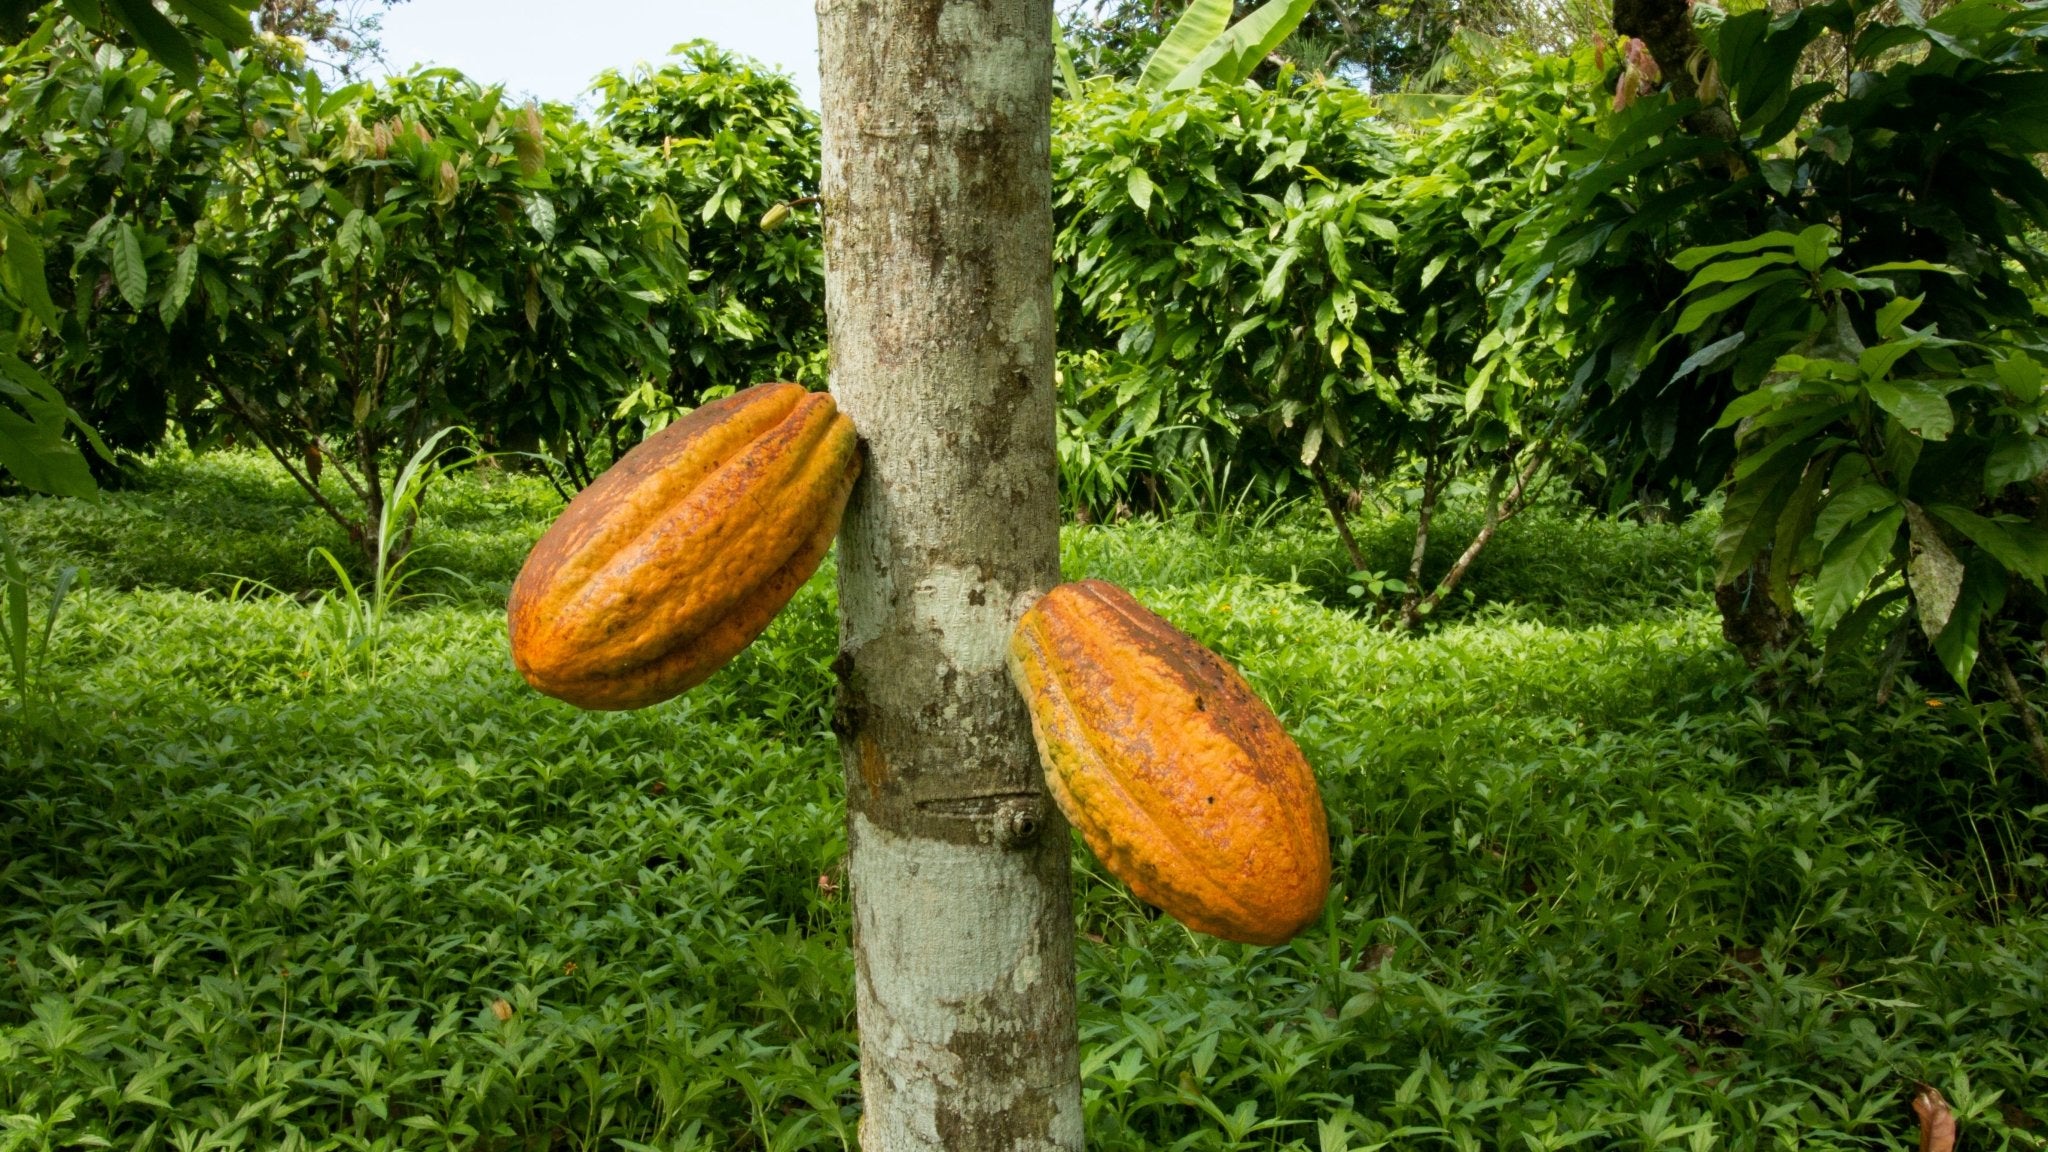 Cacao Paste (100% Pure Cacao) 8 oz- Criollo - Natural Zing